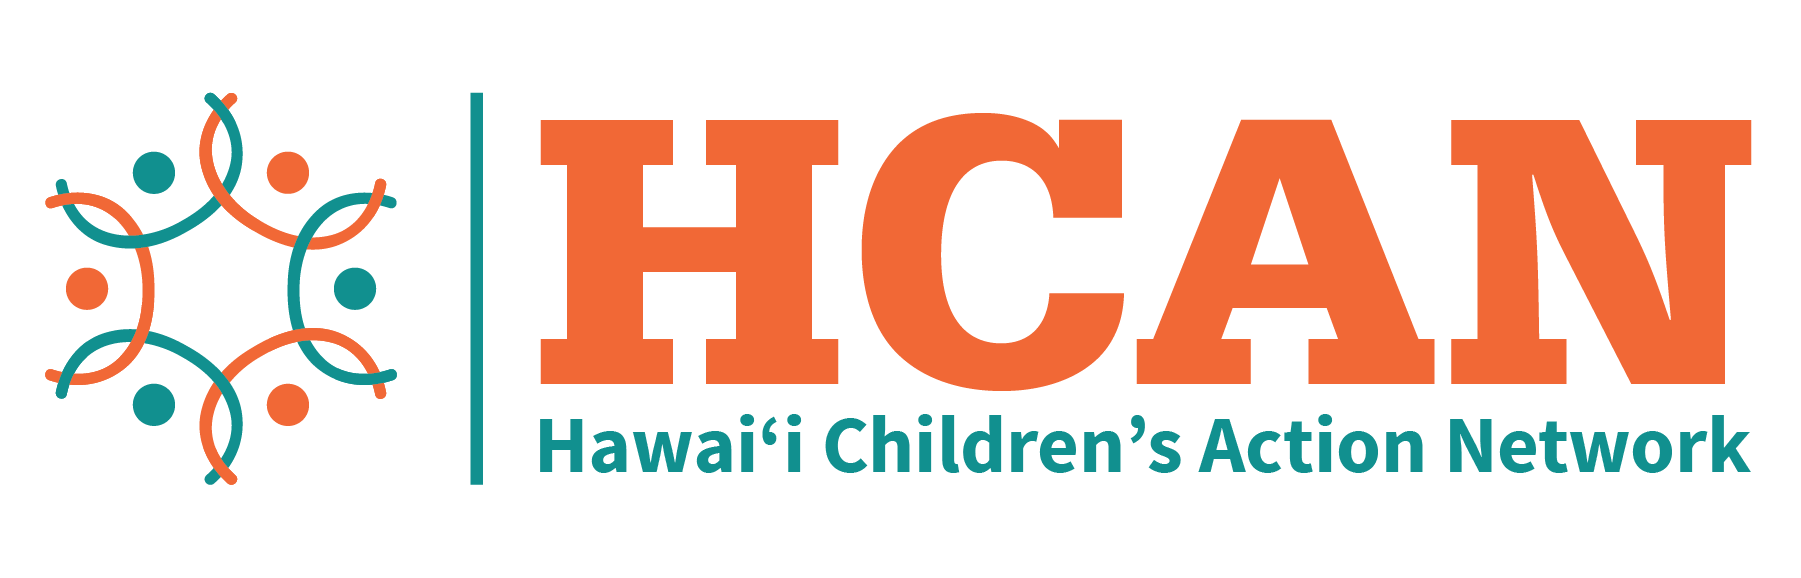 Ho'oikaika Partnership's partner Hawaii Children's Action Network's Logo